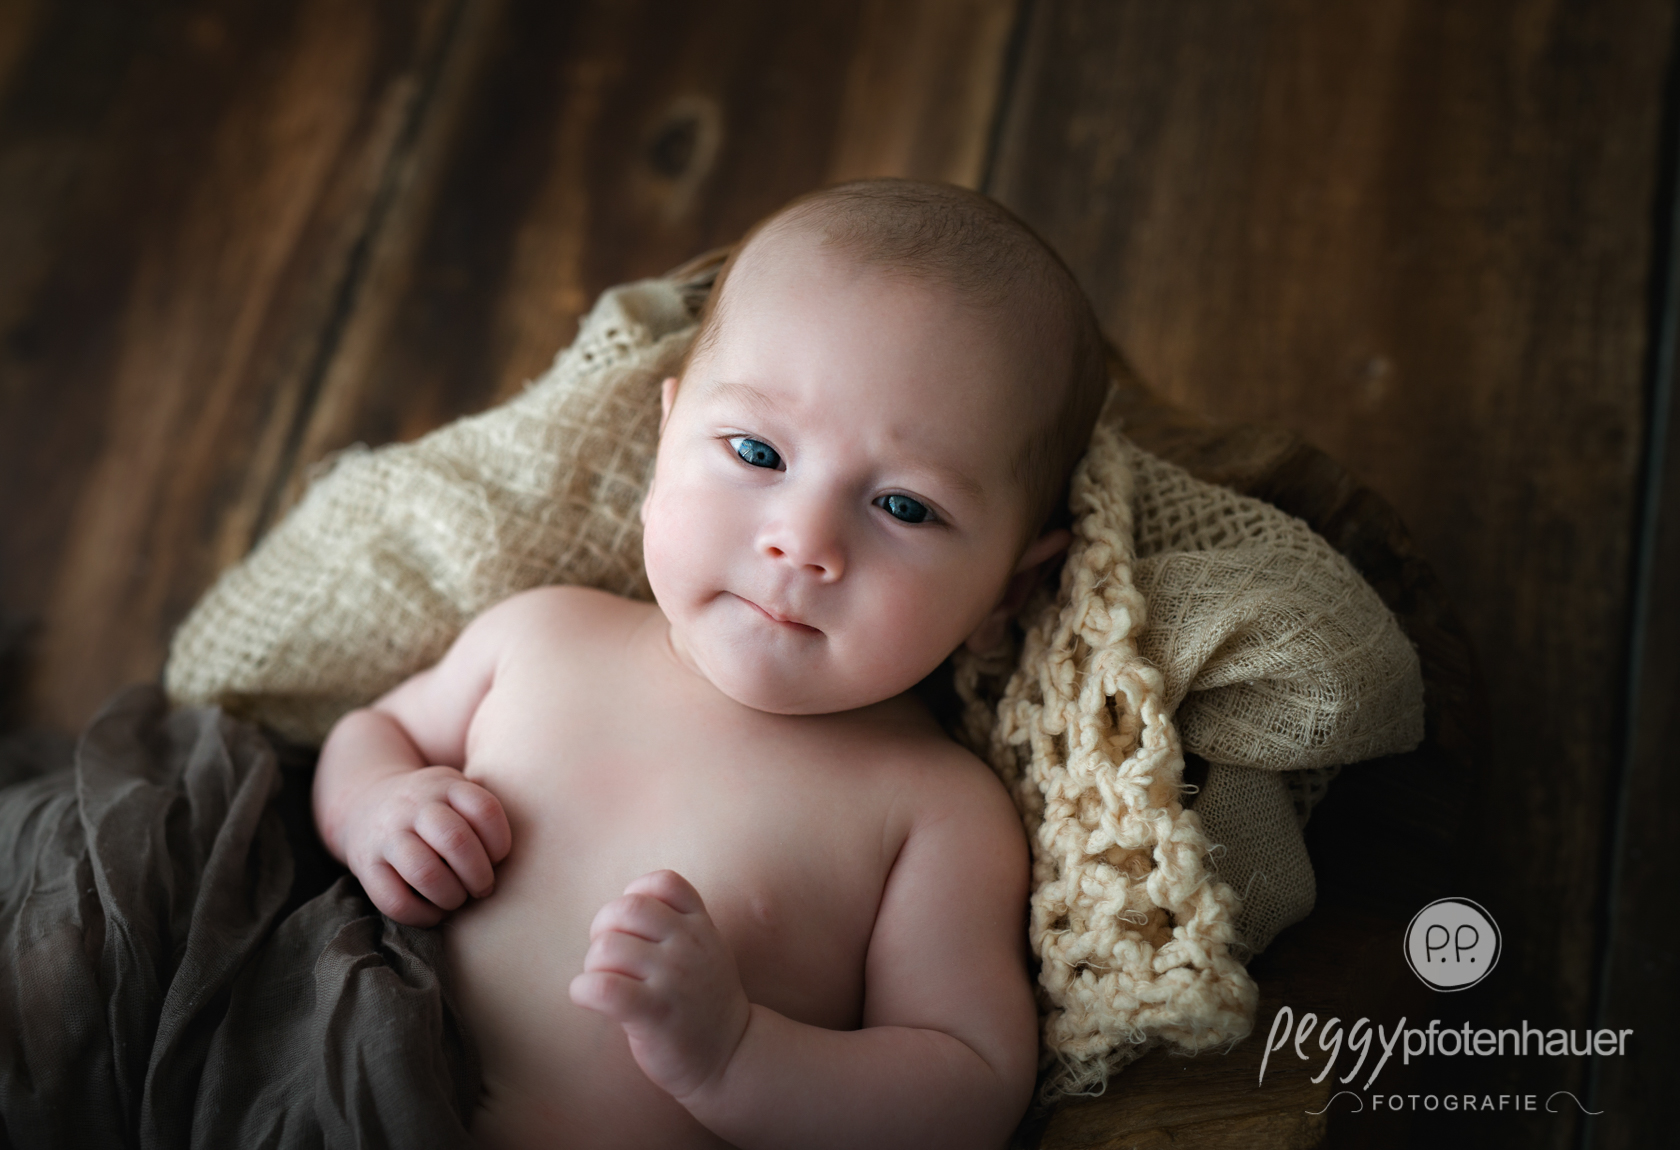 Babybilder Peggy Pfotenhauer Fotografie